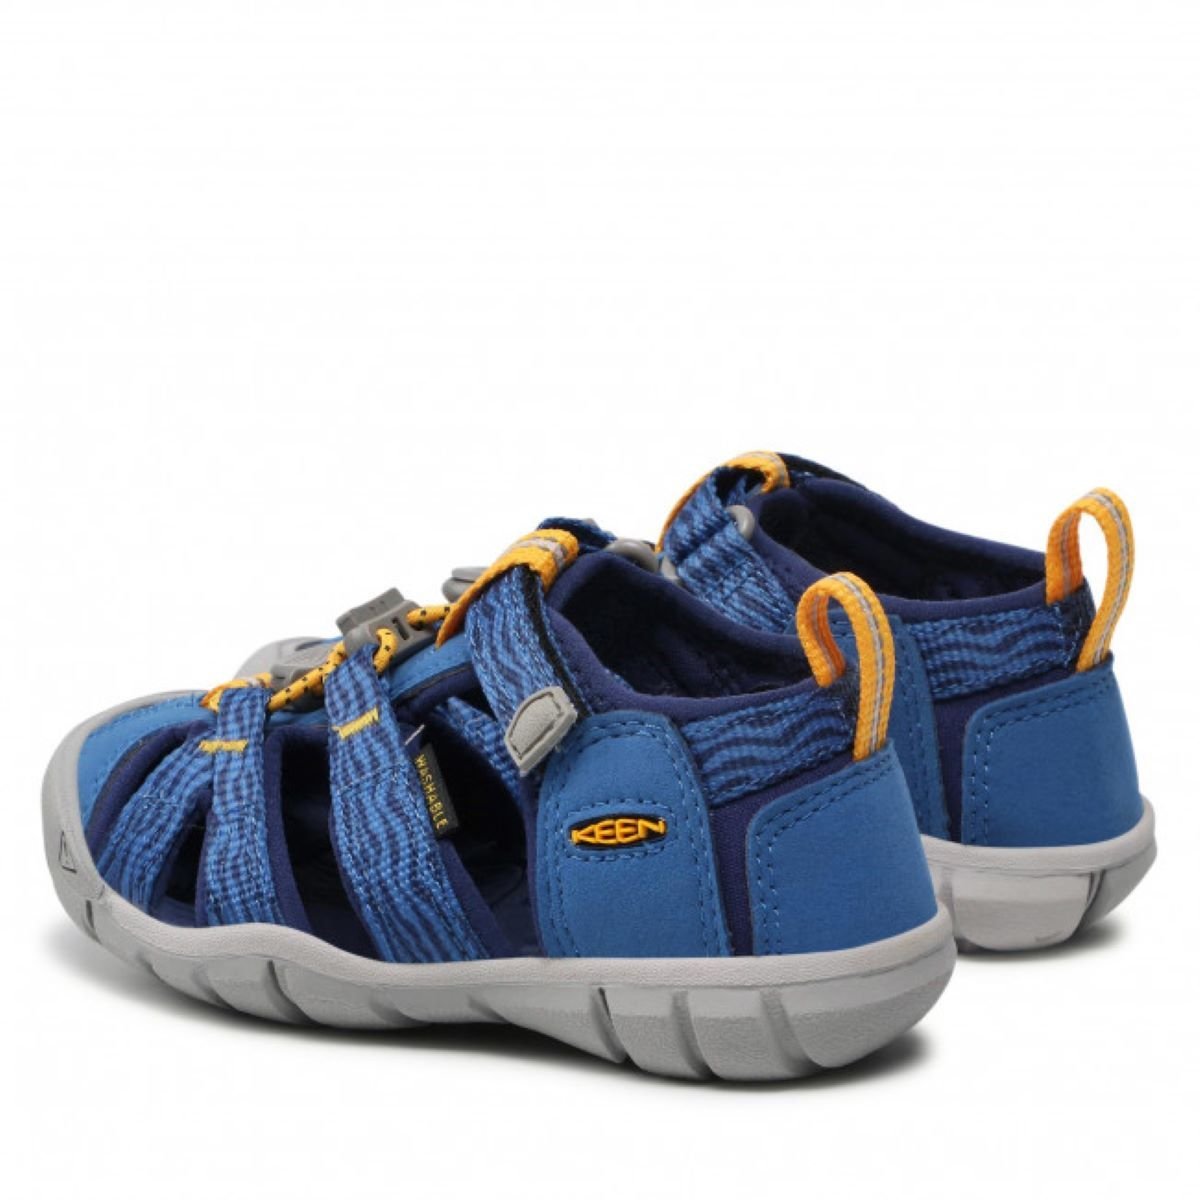 Sandále Keen SEACAMP II CNX K - modrá/oranžová